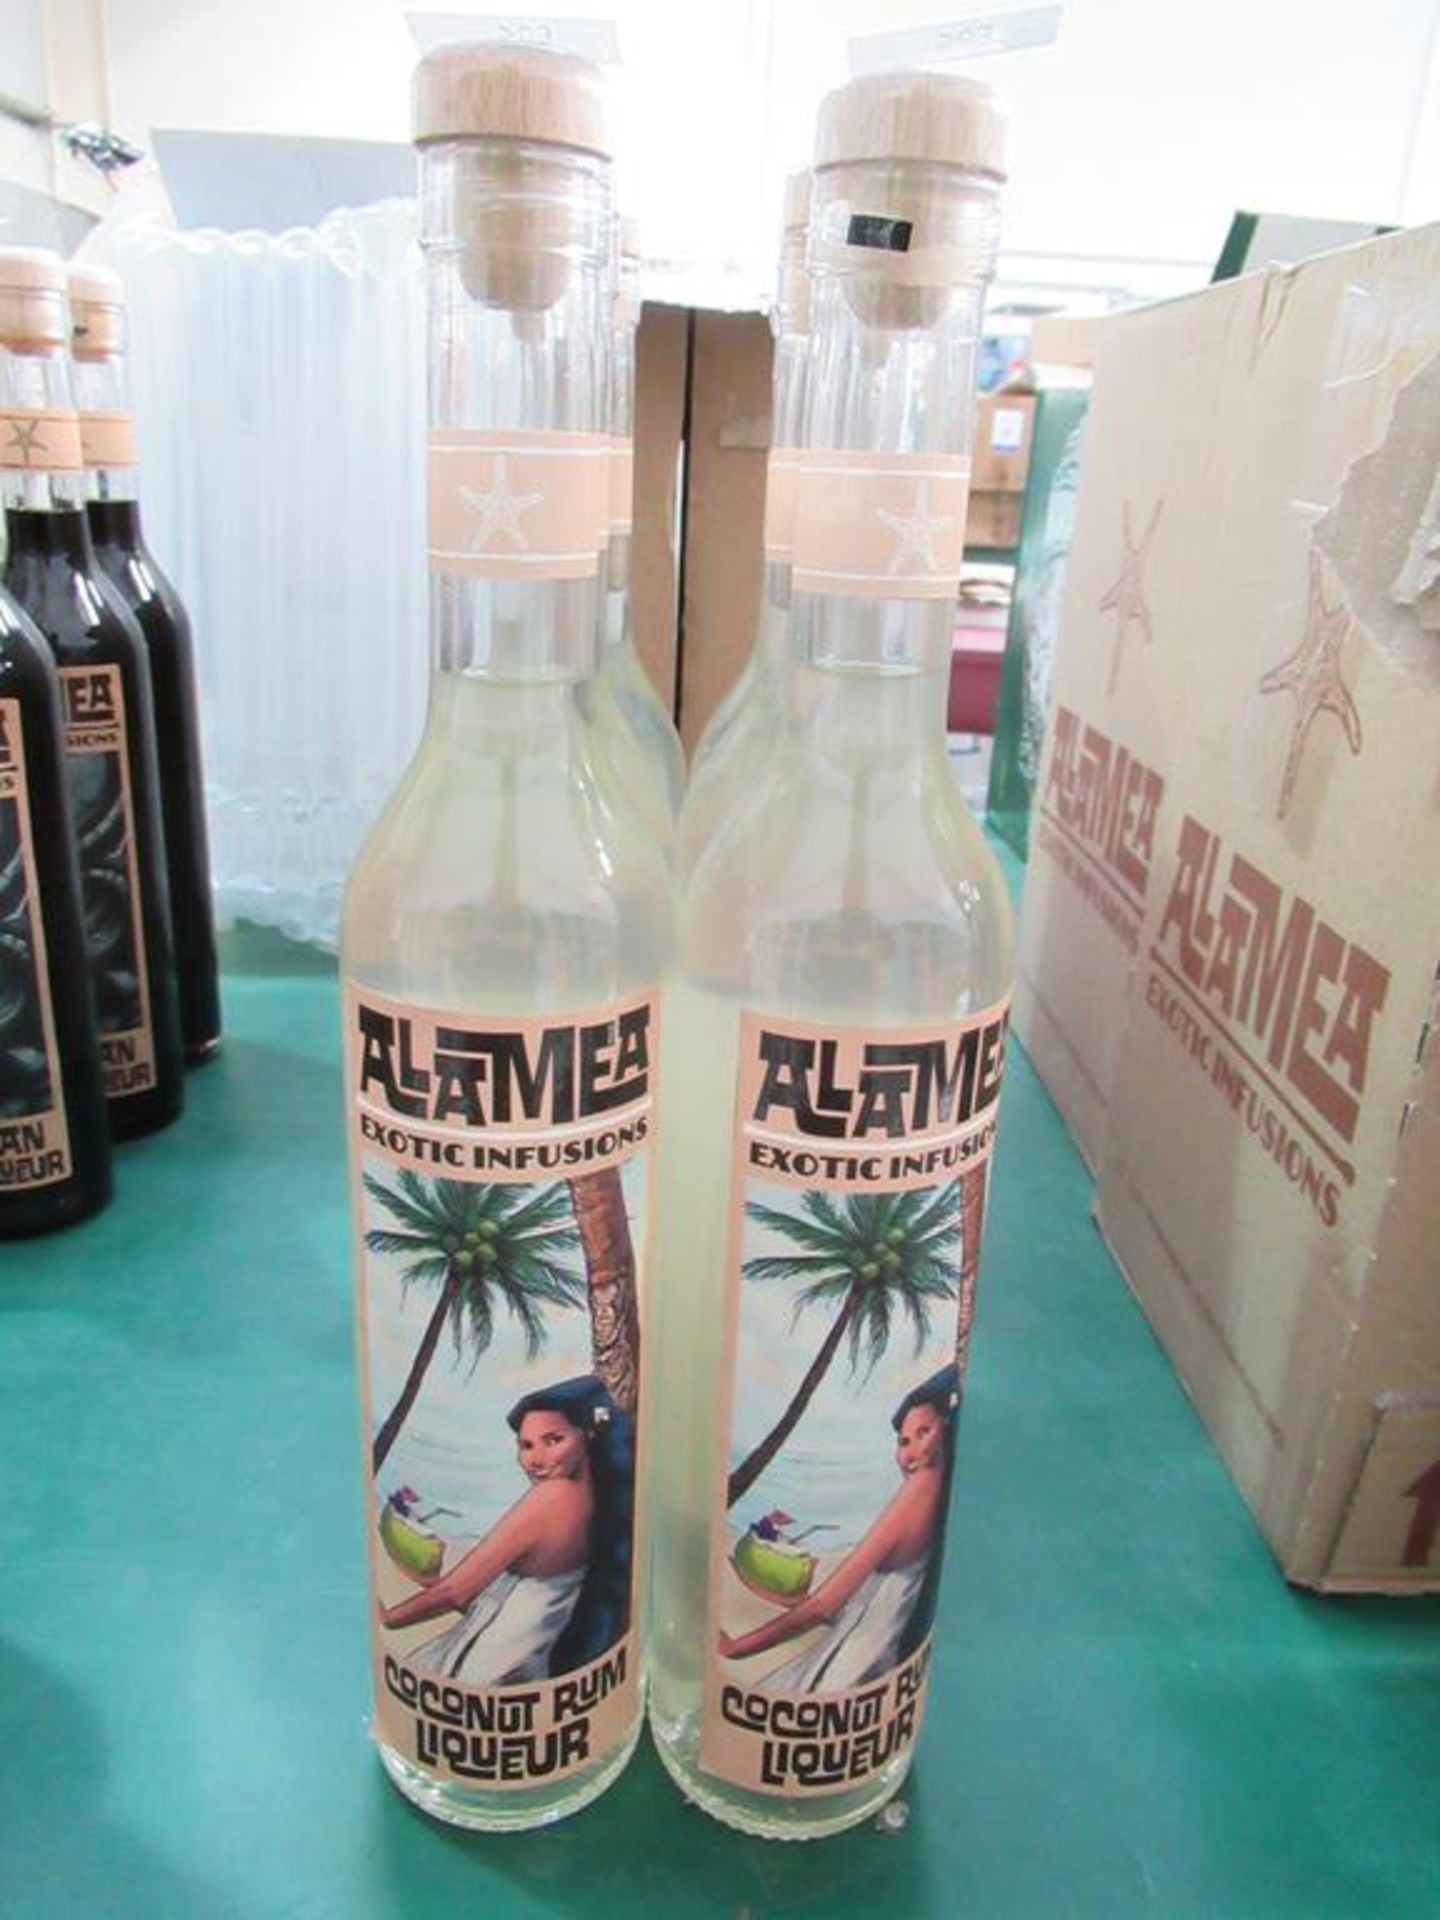 6 x bottles of Alamea coconut rum liqueur